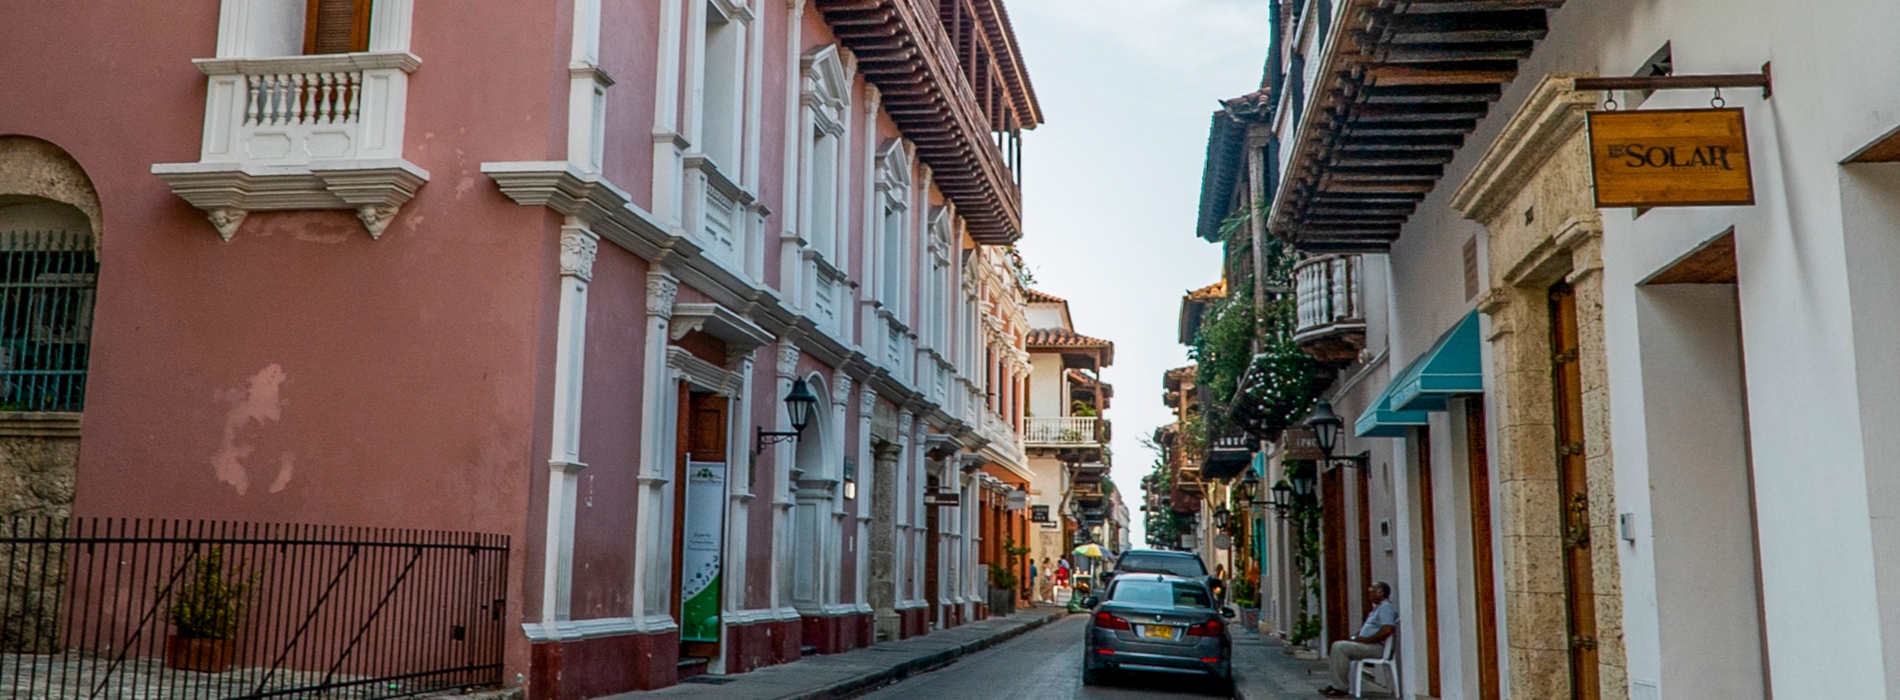 Calles de ciudad colonial en Colombia 